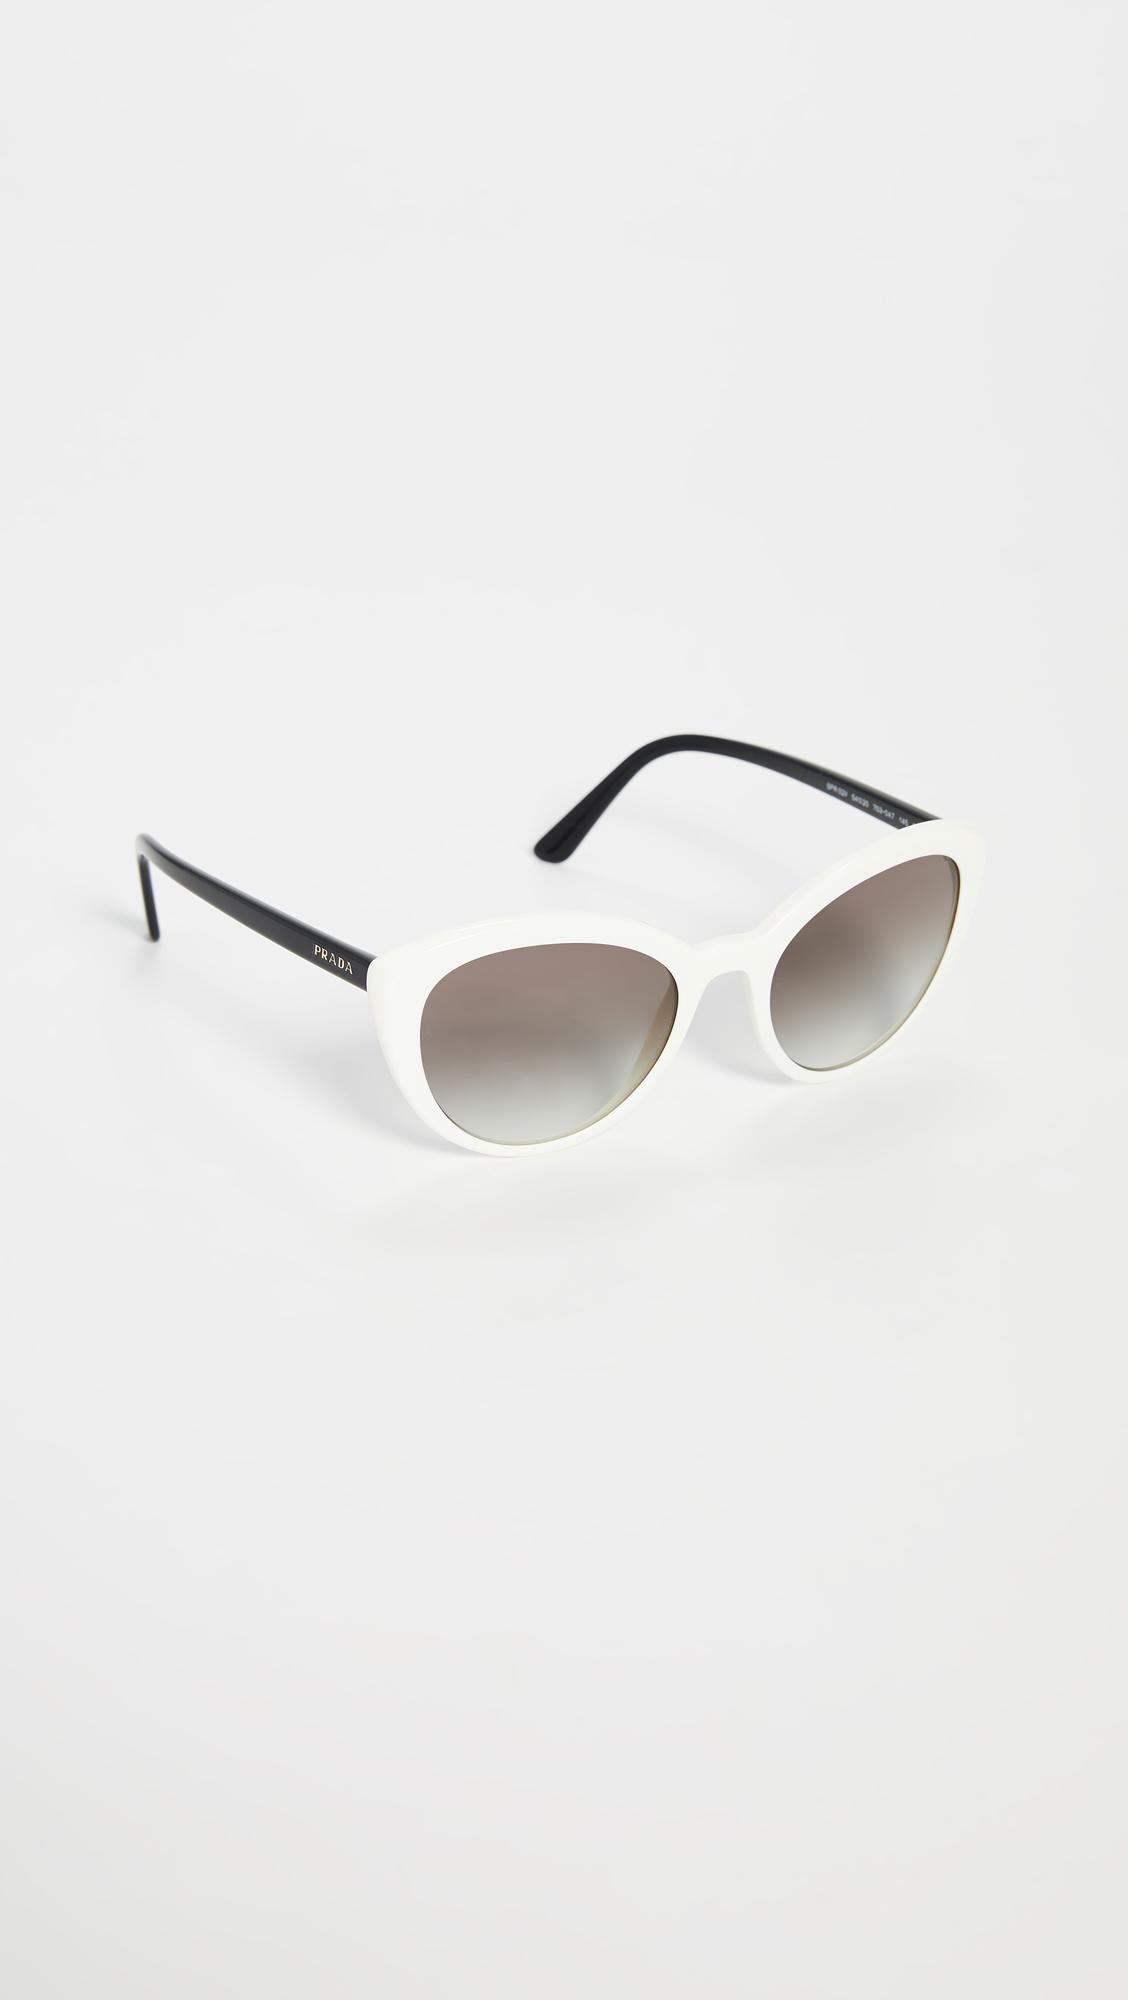 Prada Classic Cat Eye Sunglasses in 